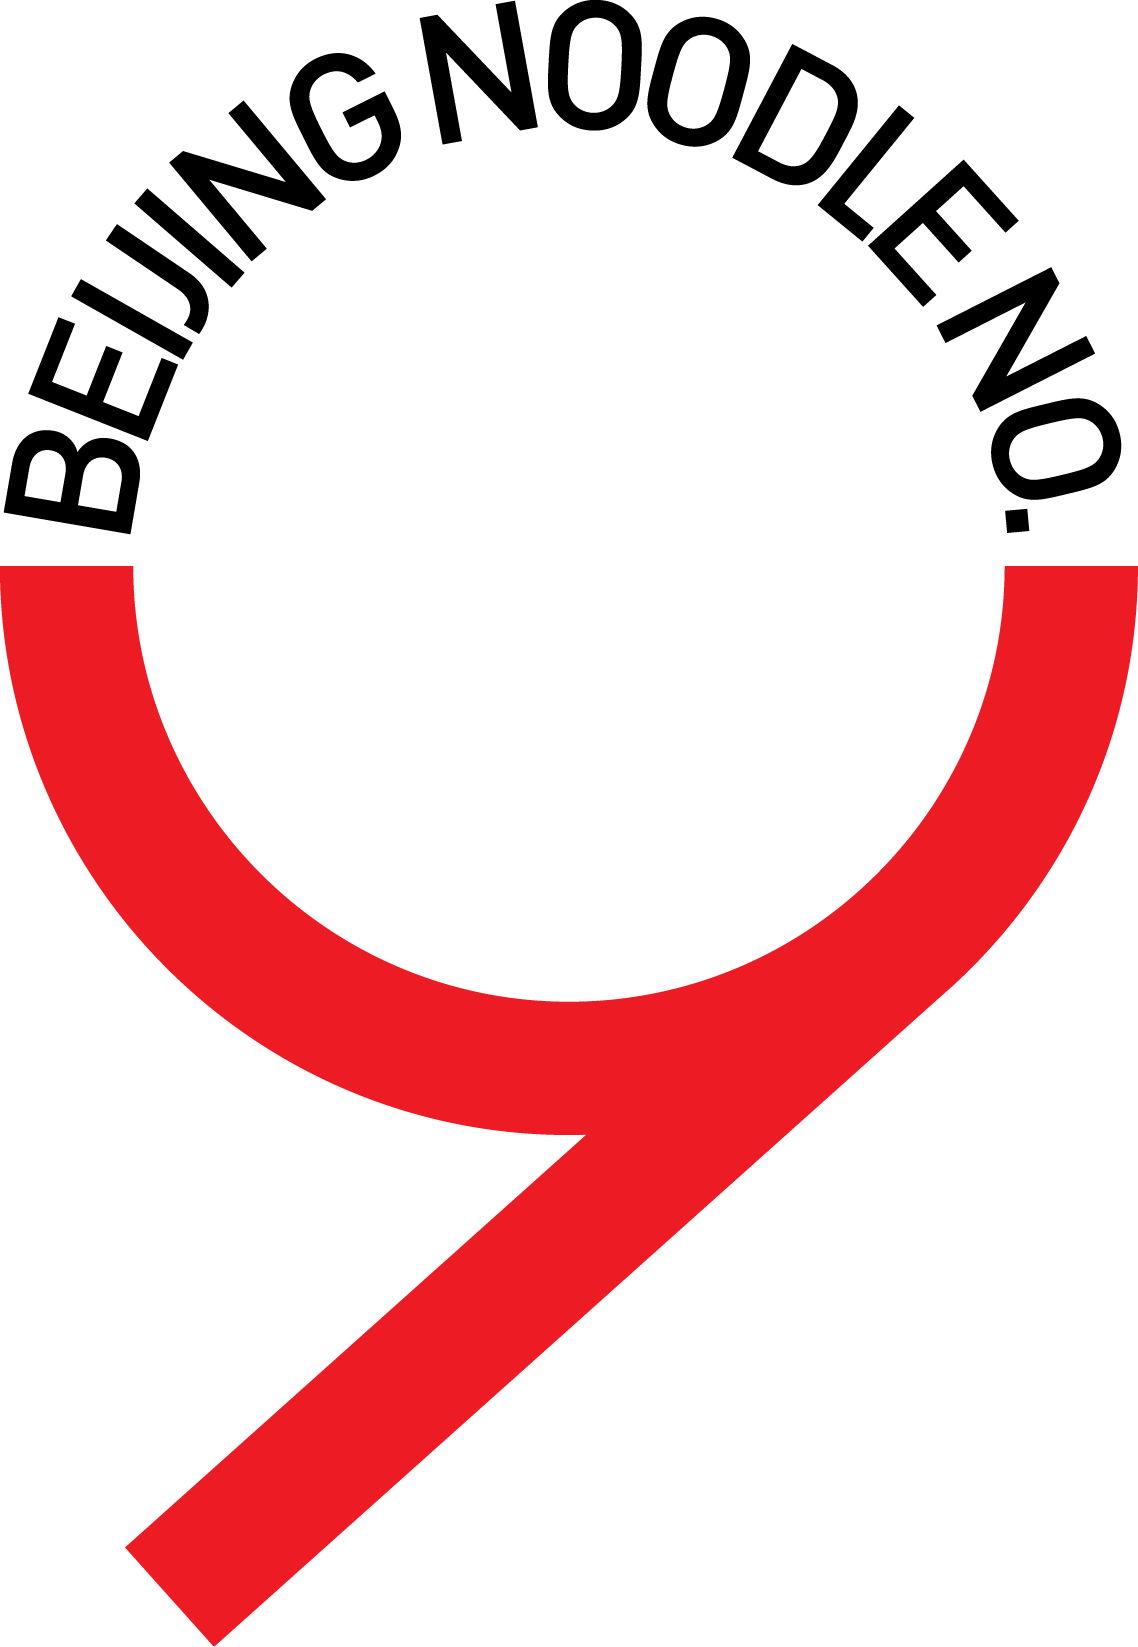 Beijing Number 9 logo